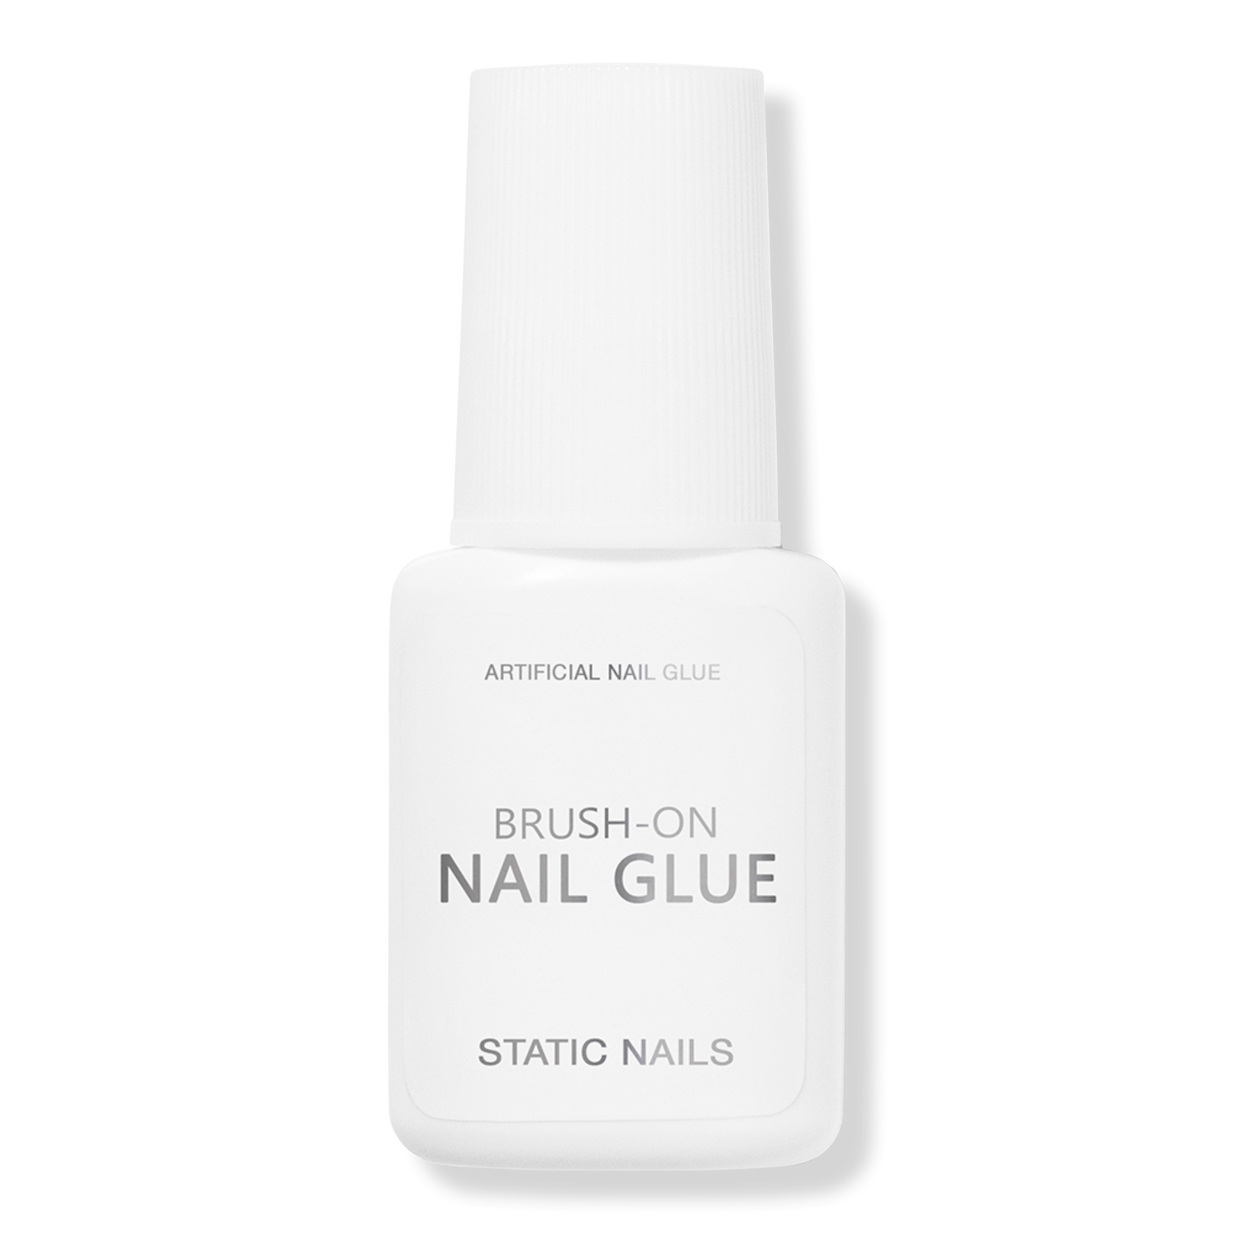 Nail Tips Series / Nail Tip Shapes / Nail Glue